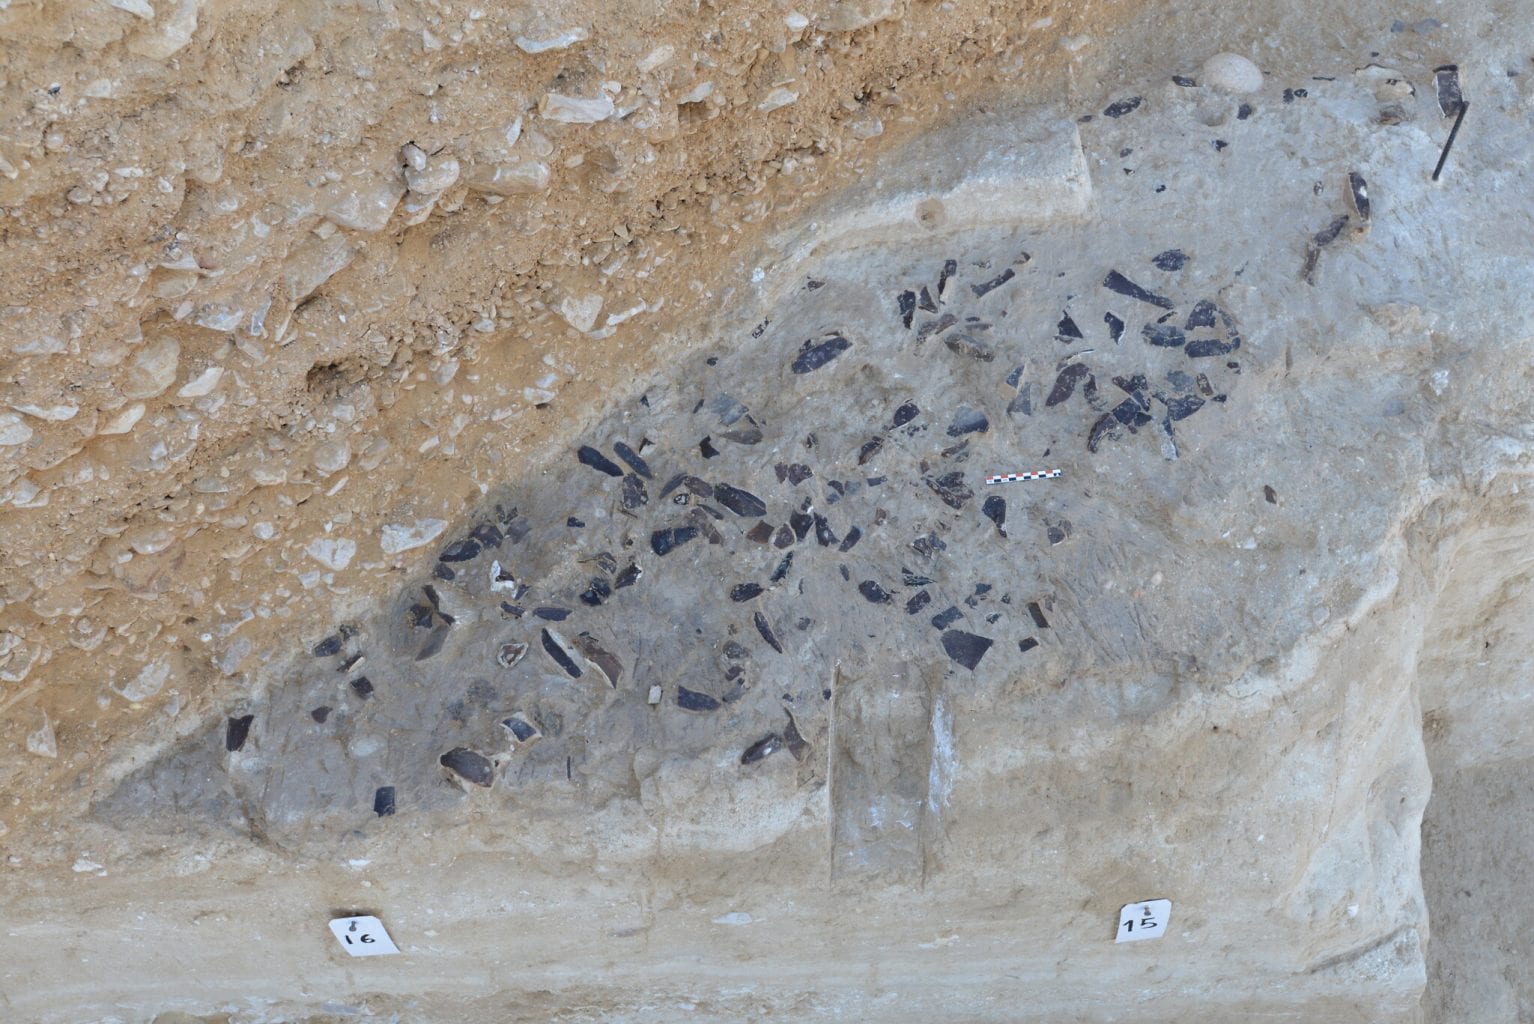 Слой кремневых орудий раннего верхнего палеолита. Это то, что археологи обычно находят на древних памятниках. Фото: профессор Элизабетта Боаретто, Институт науки Вейцмана.